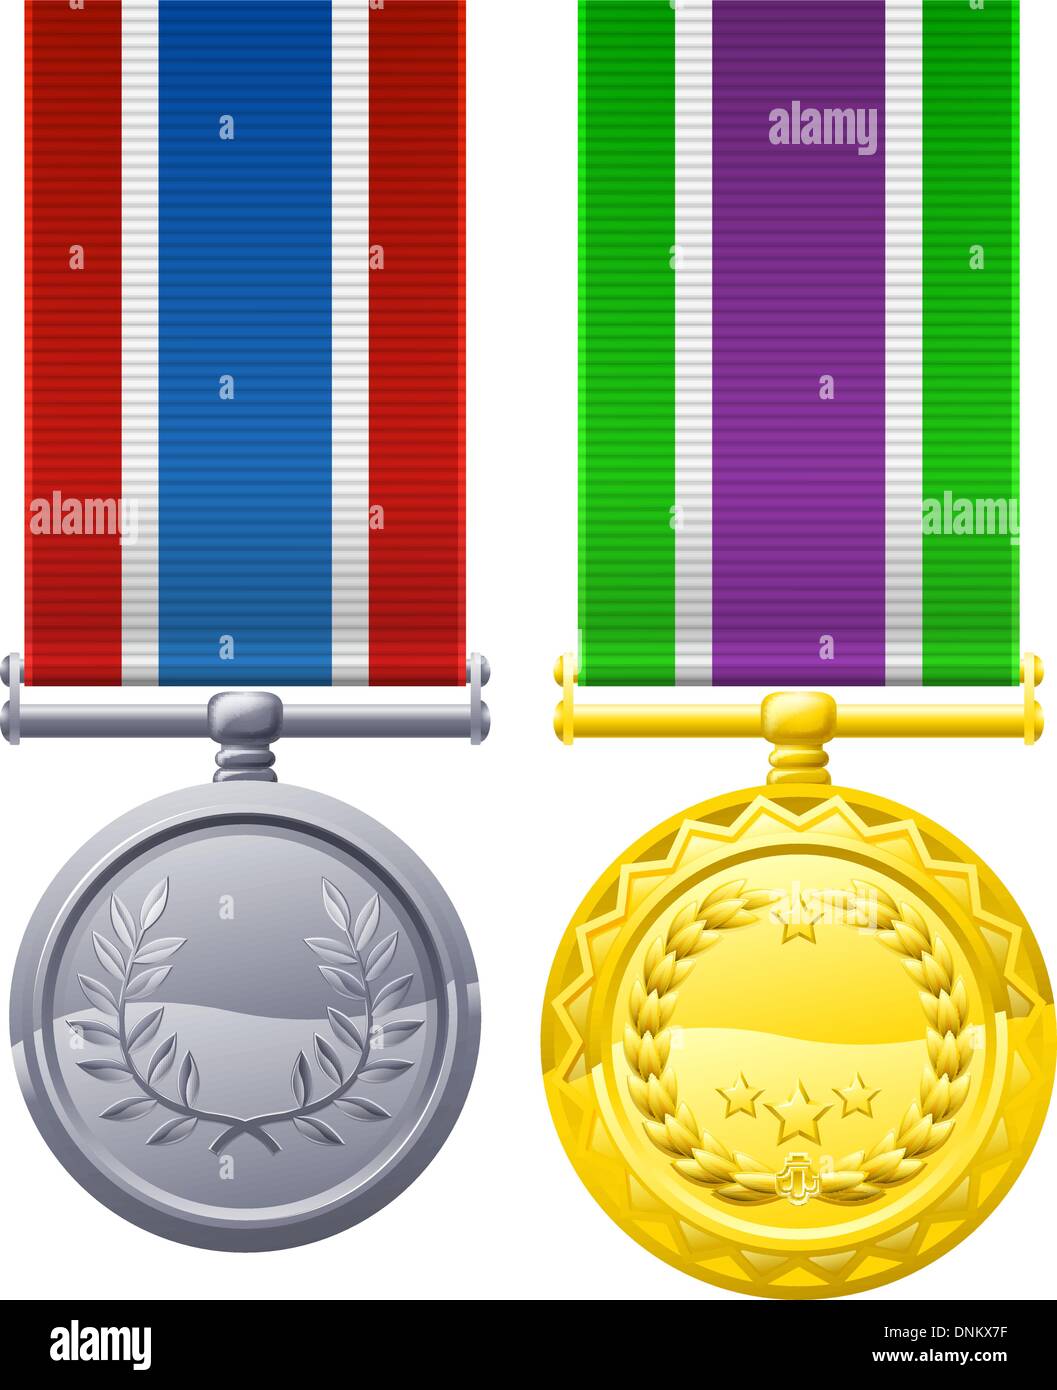 Dekorationen oder Medaille design Elemente Illustrationen, Gold mit weiß, lila und grüne Band, Silber mit blau weiß und Stock Vektor